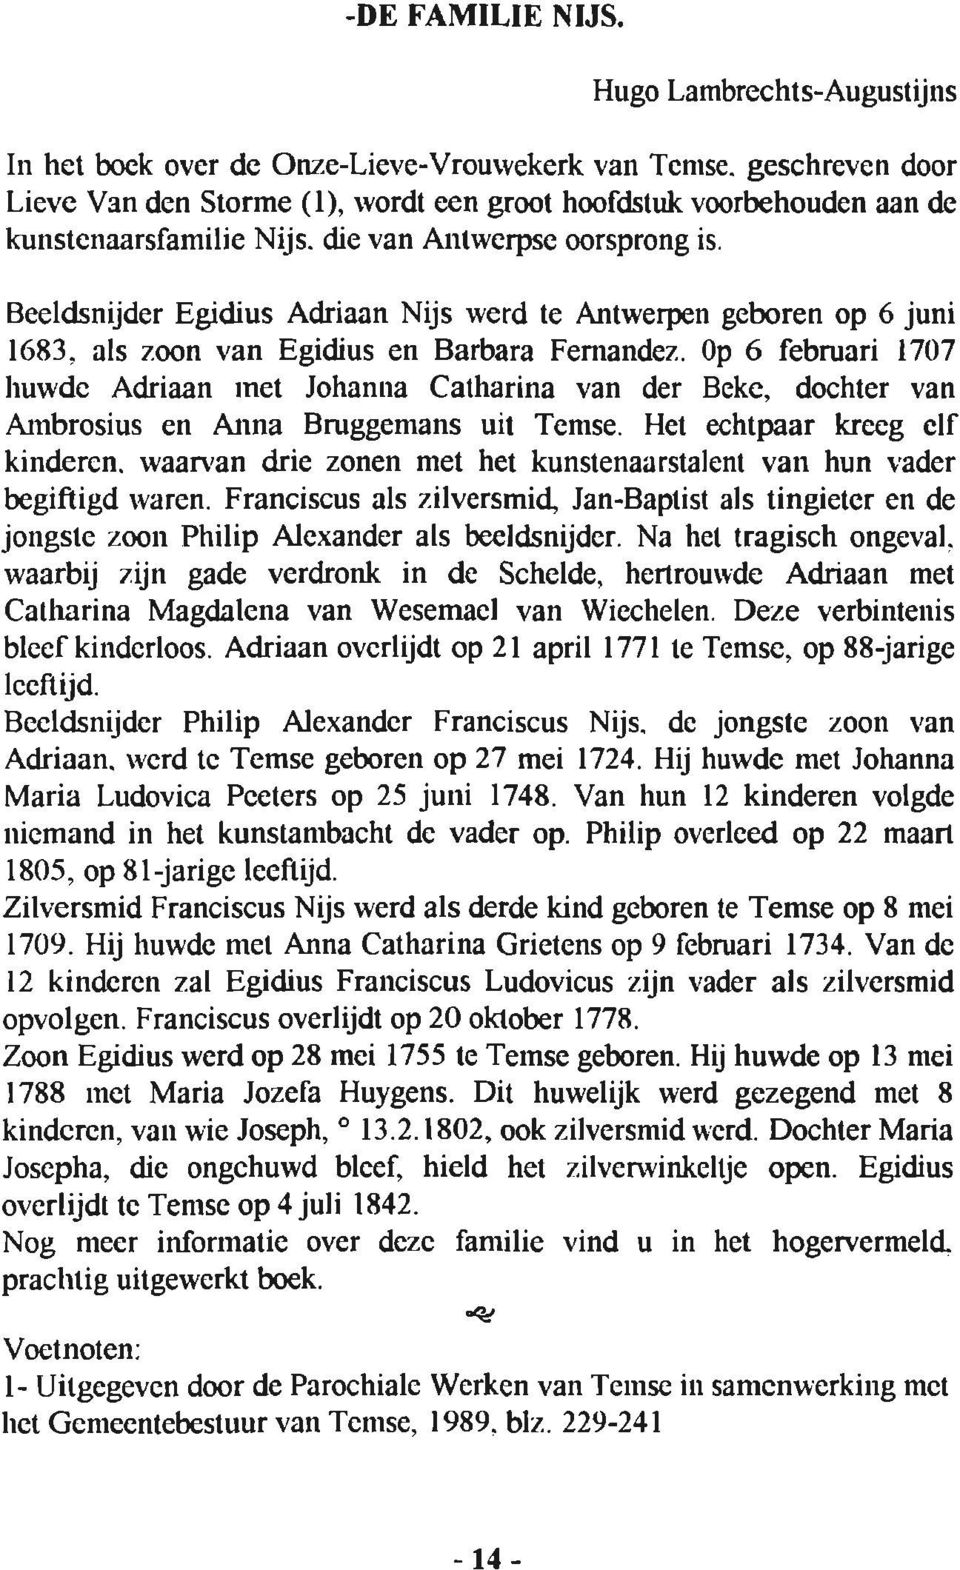 Beeldsnijder Egidius Adriaan Nijs werd te Antwerpen geboren op 6 juni 1683. als zoon van Egidius en Barbara Fernandez.